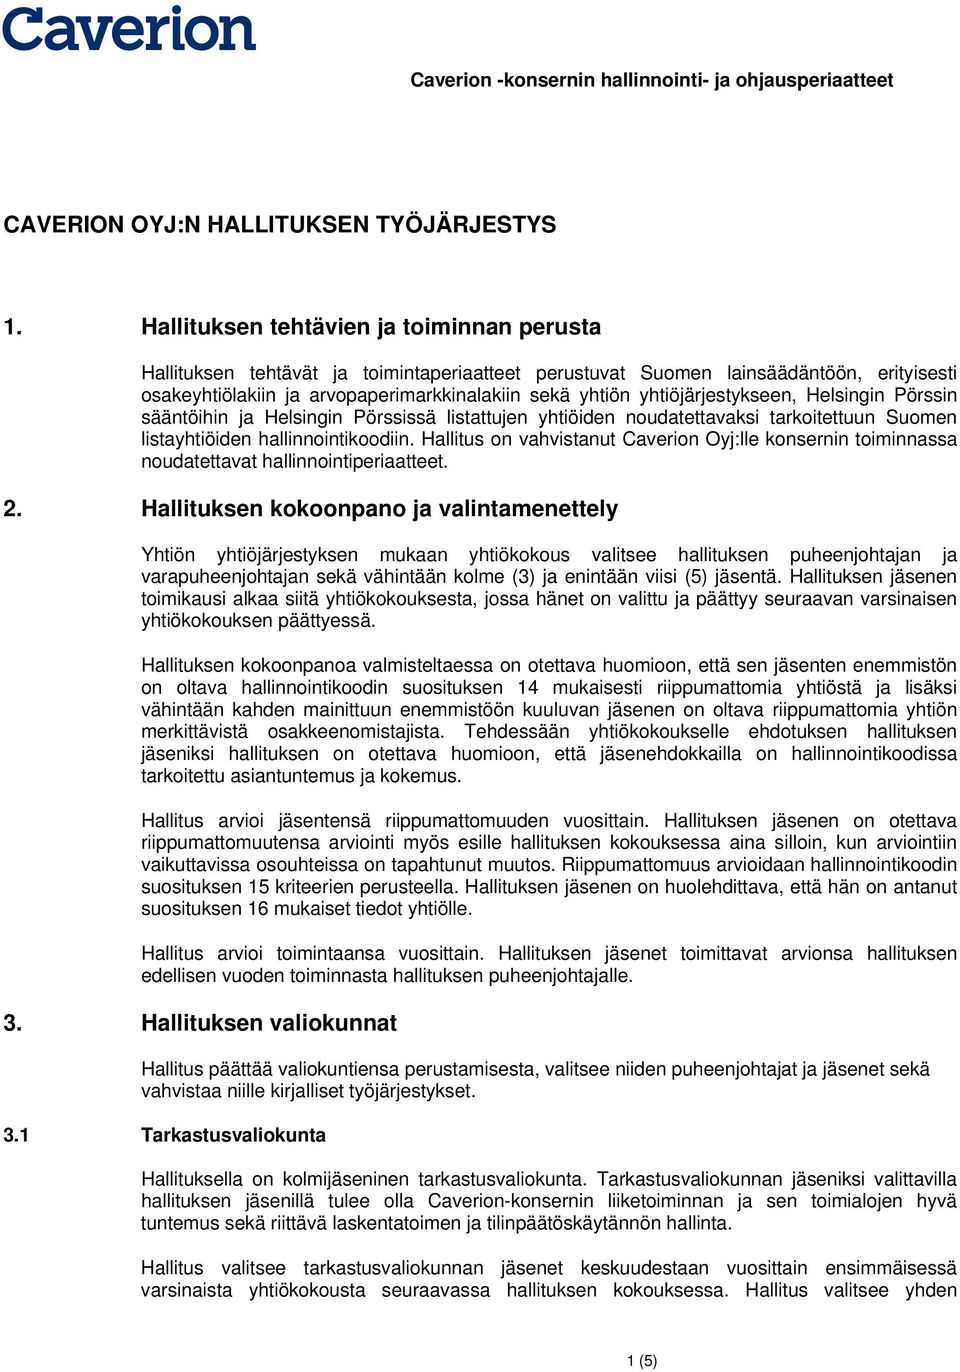 yhtiöjärjestykseen, Helsingin Pörssin sääntöihin ja Helsingin Pörssissä listattujen yhtiöiden nudatettavaksi tarkitettuun Sumen listayhtiöiden hallinnintikdiin.